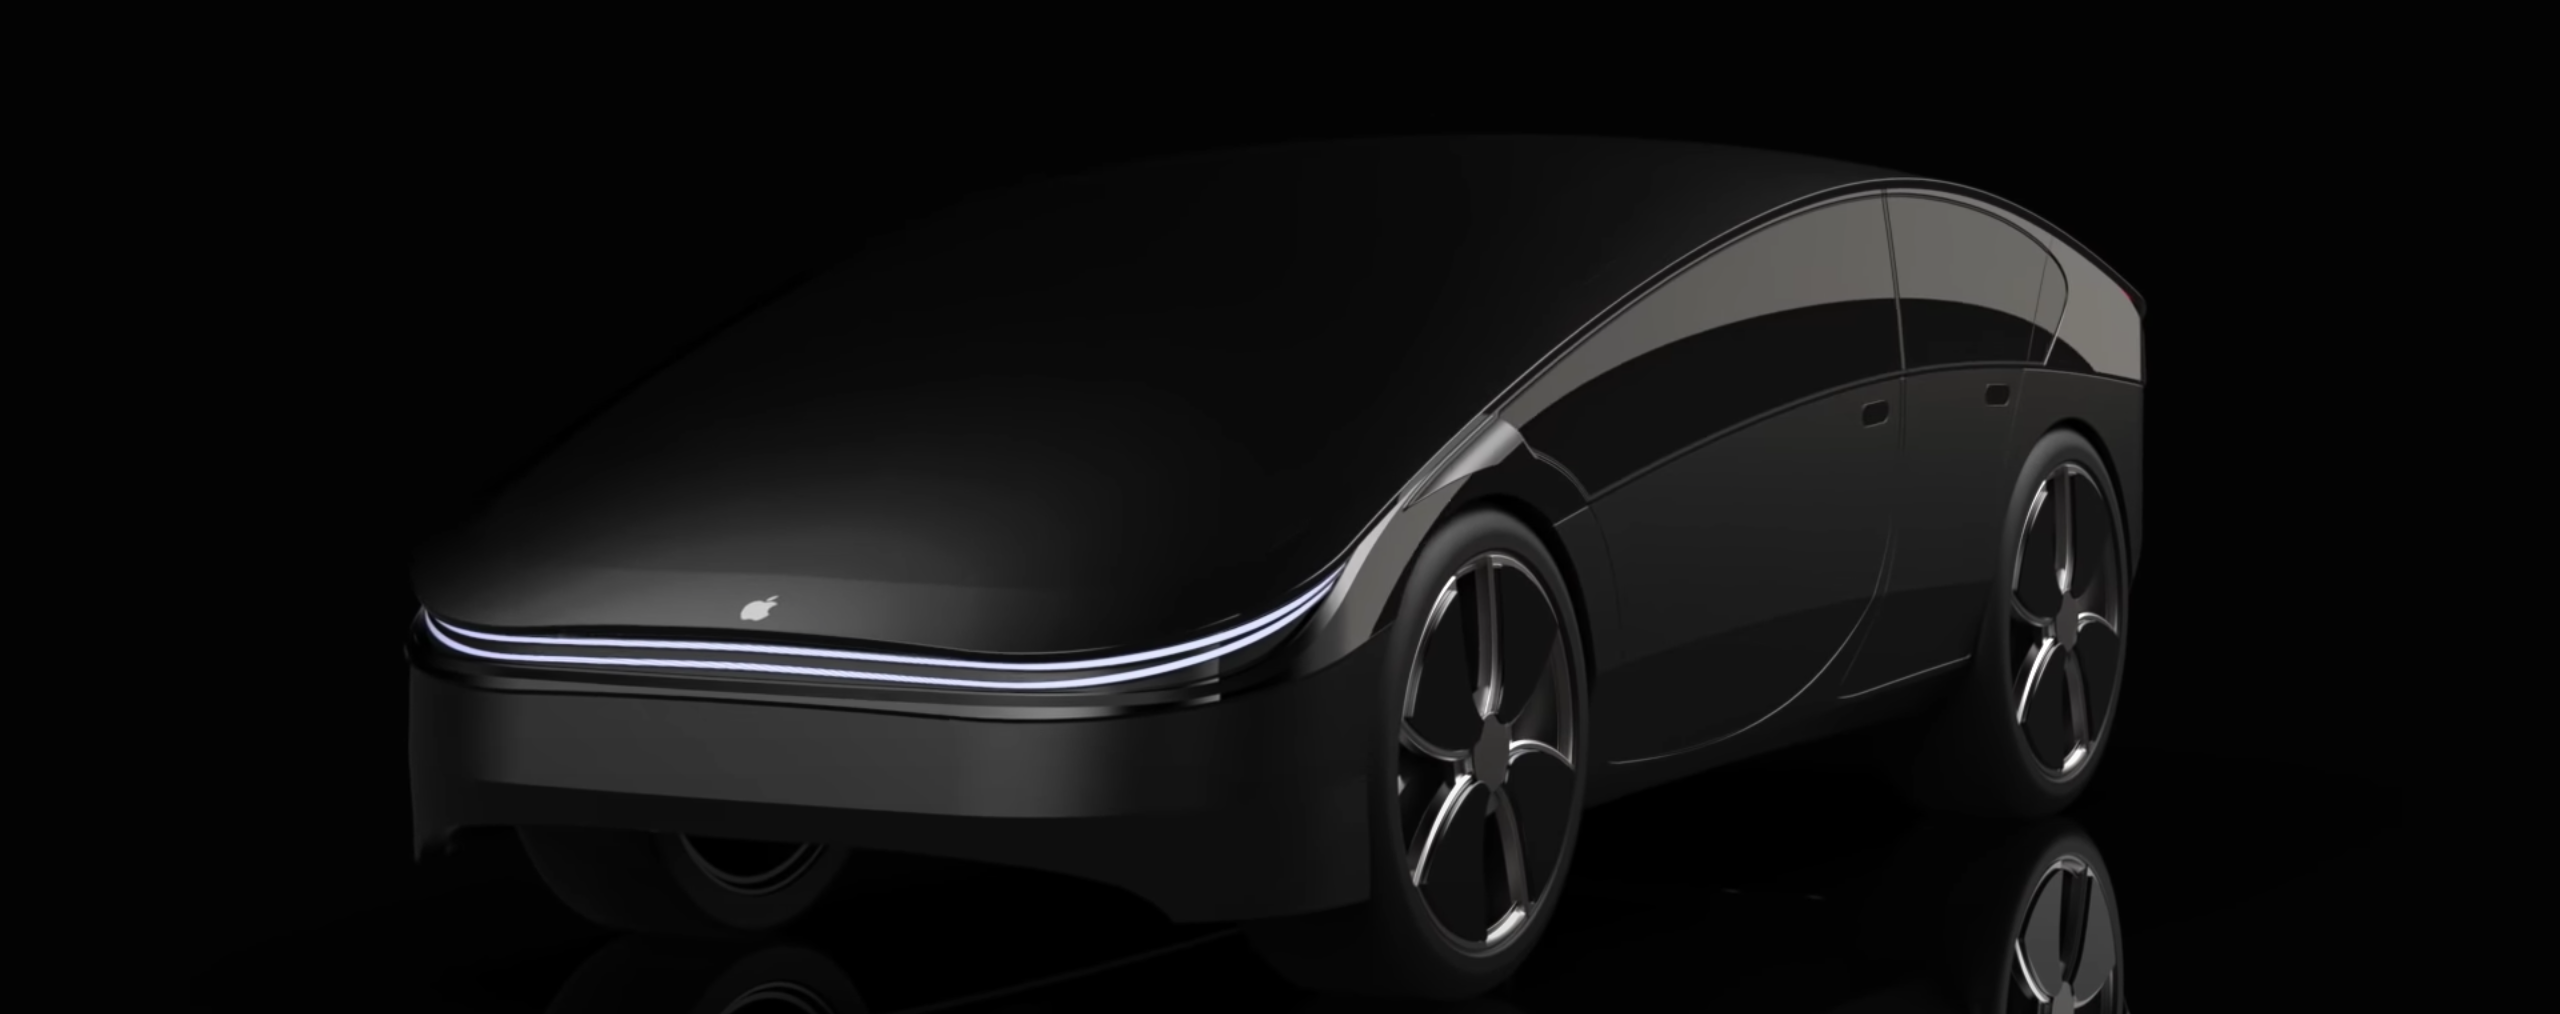 أخبار 2 فبراير 2021 يكشف Ming-Chi Kuo بشكل مذهل عن إمكانية حدوث ذلك Apple السيارات